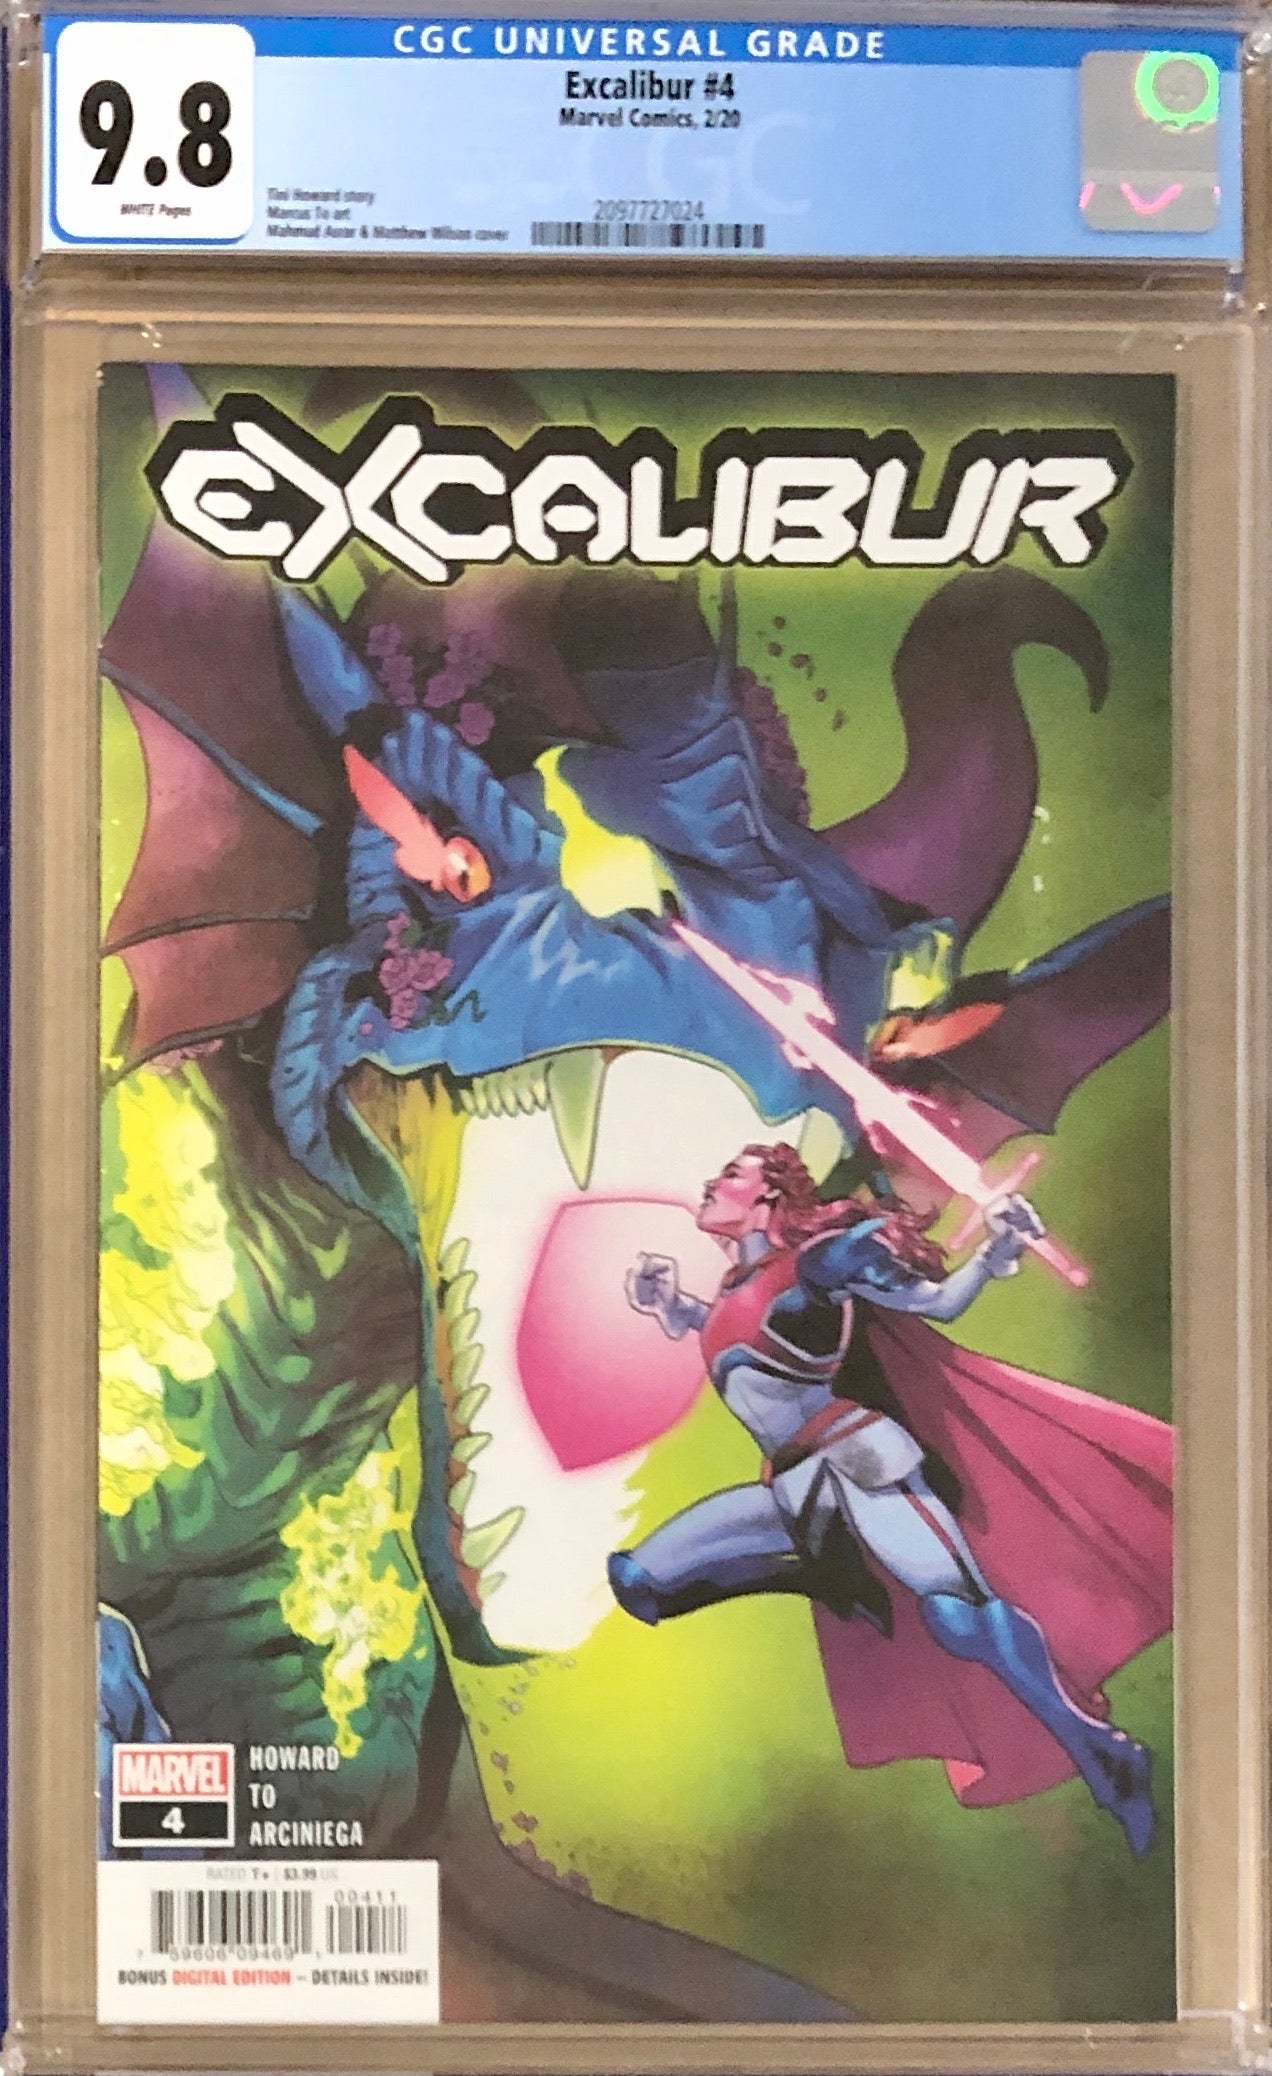 Excalibur #4 CGC 9.8 - Dawn of X!